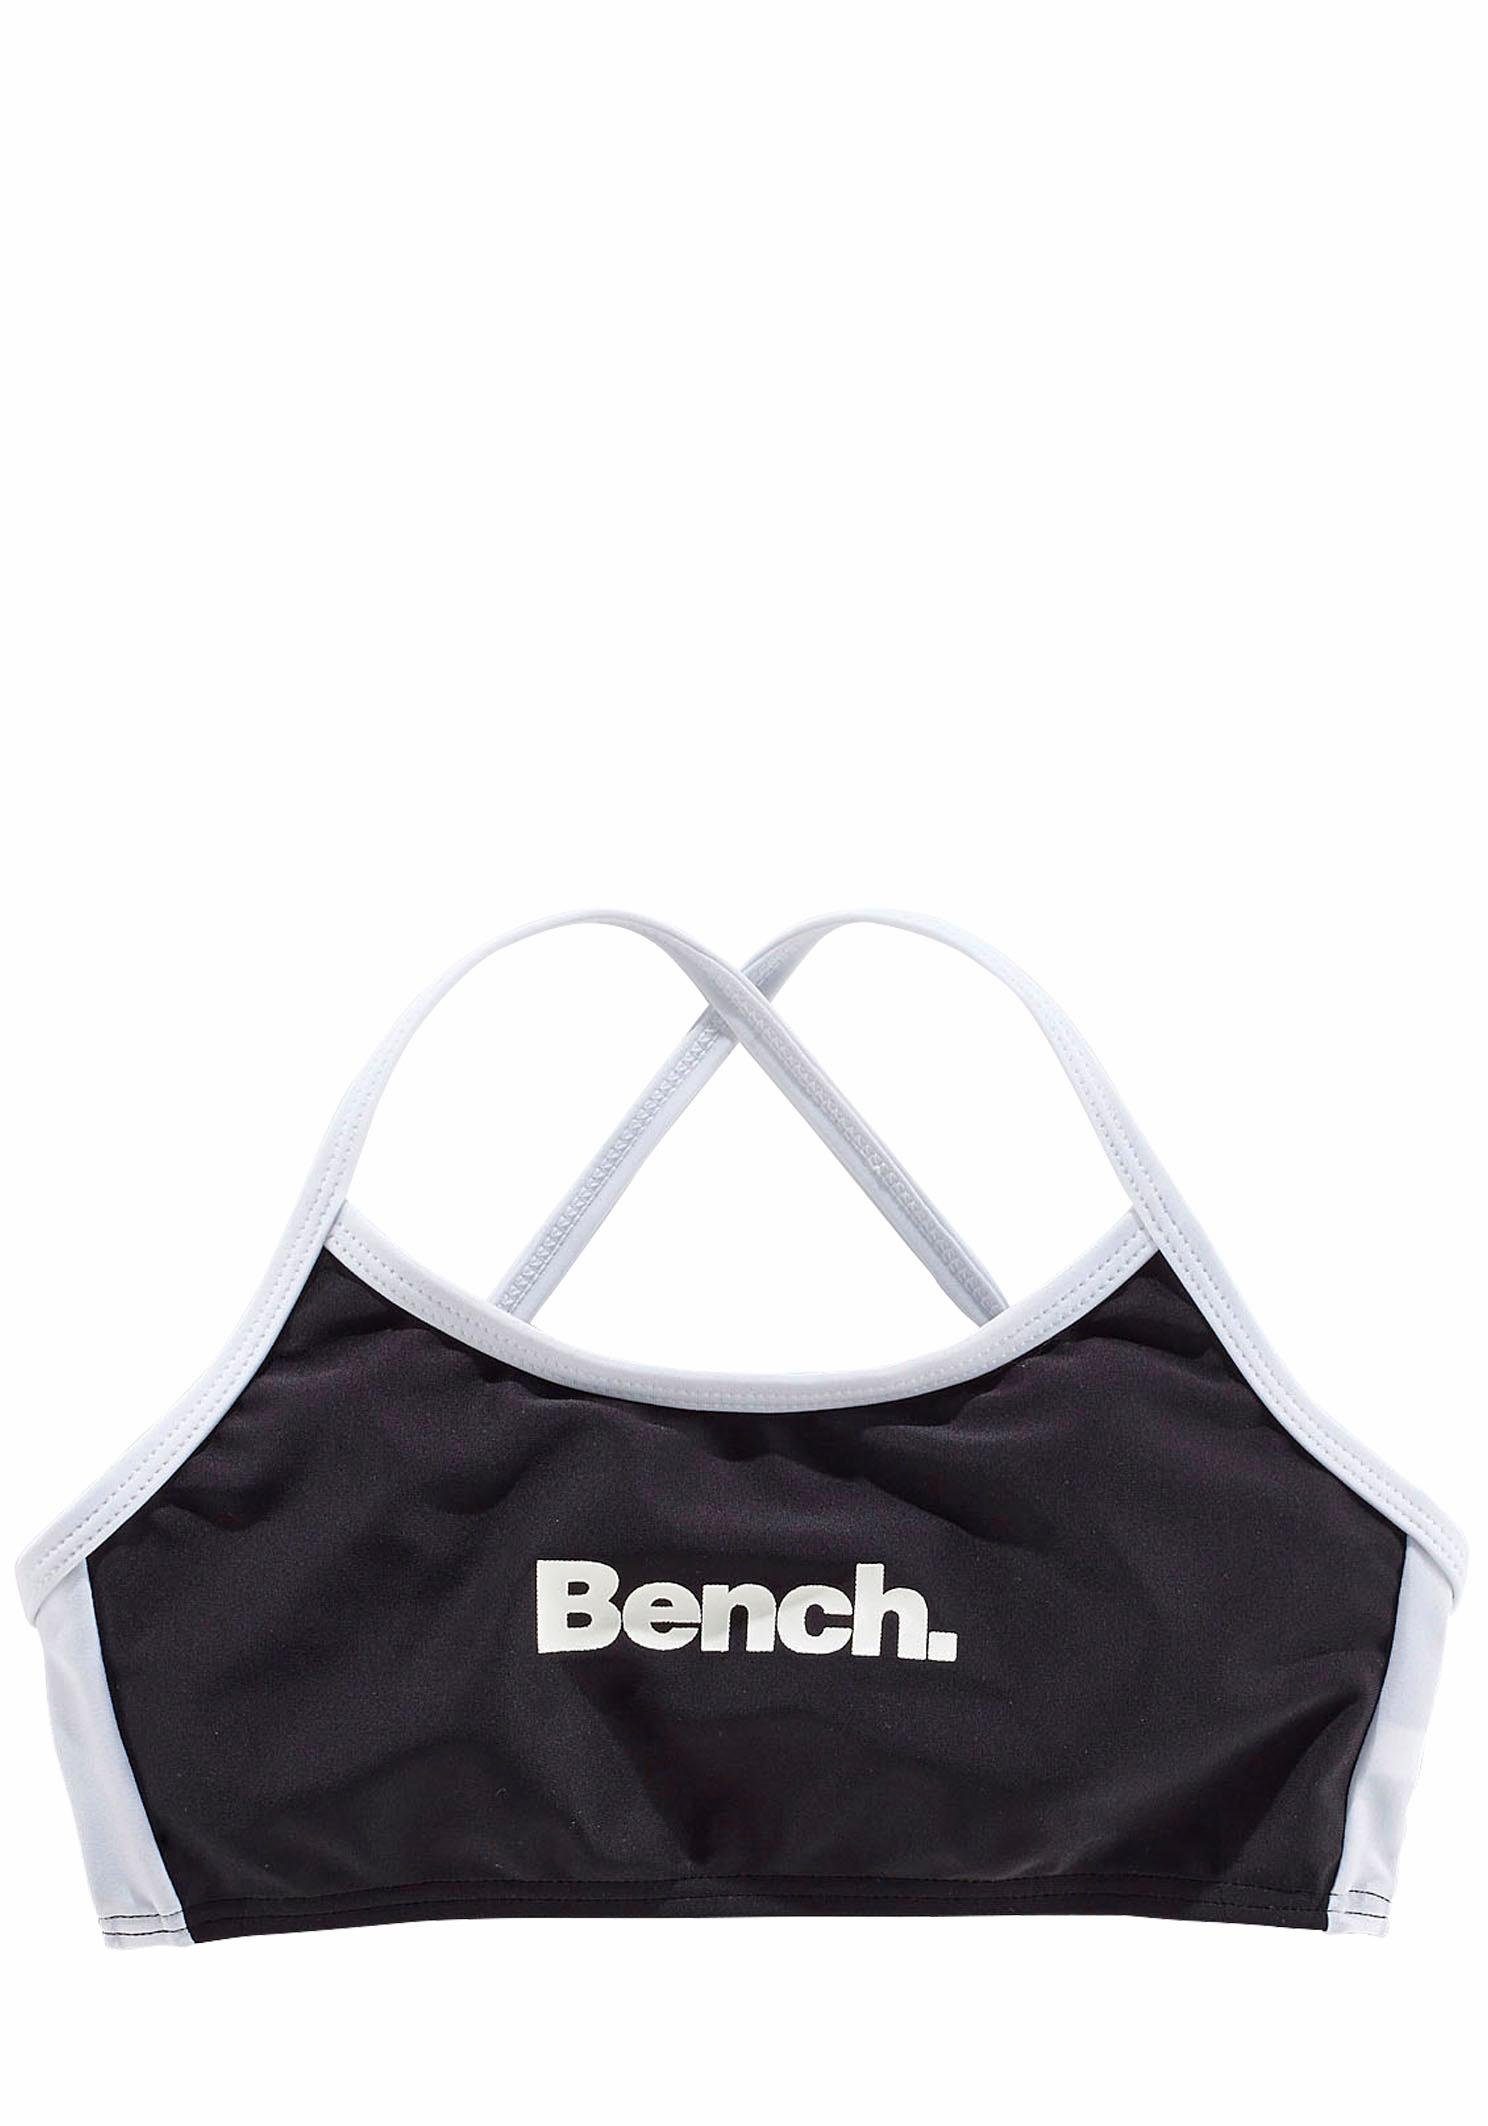 Bench. Bustier-Bikini mit Trägern gekreuzten schwarz-weiß